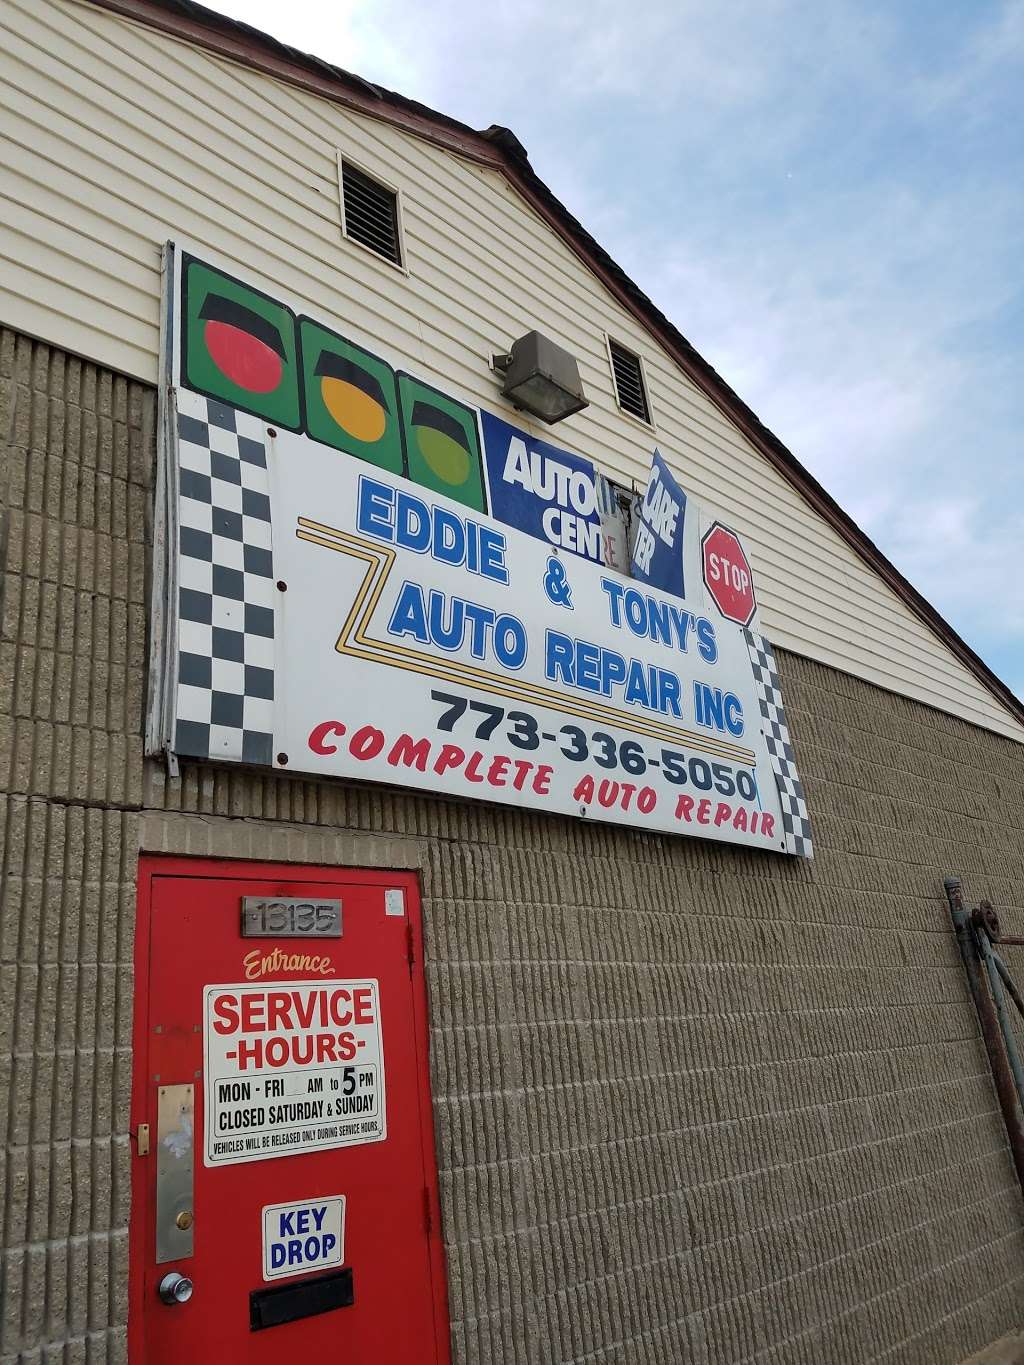 Eddie & Tonys Auto Repair | 13135 S Manistee Ave, Chicago, IL 60633 | Phone: (773) 614-0338